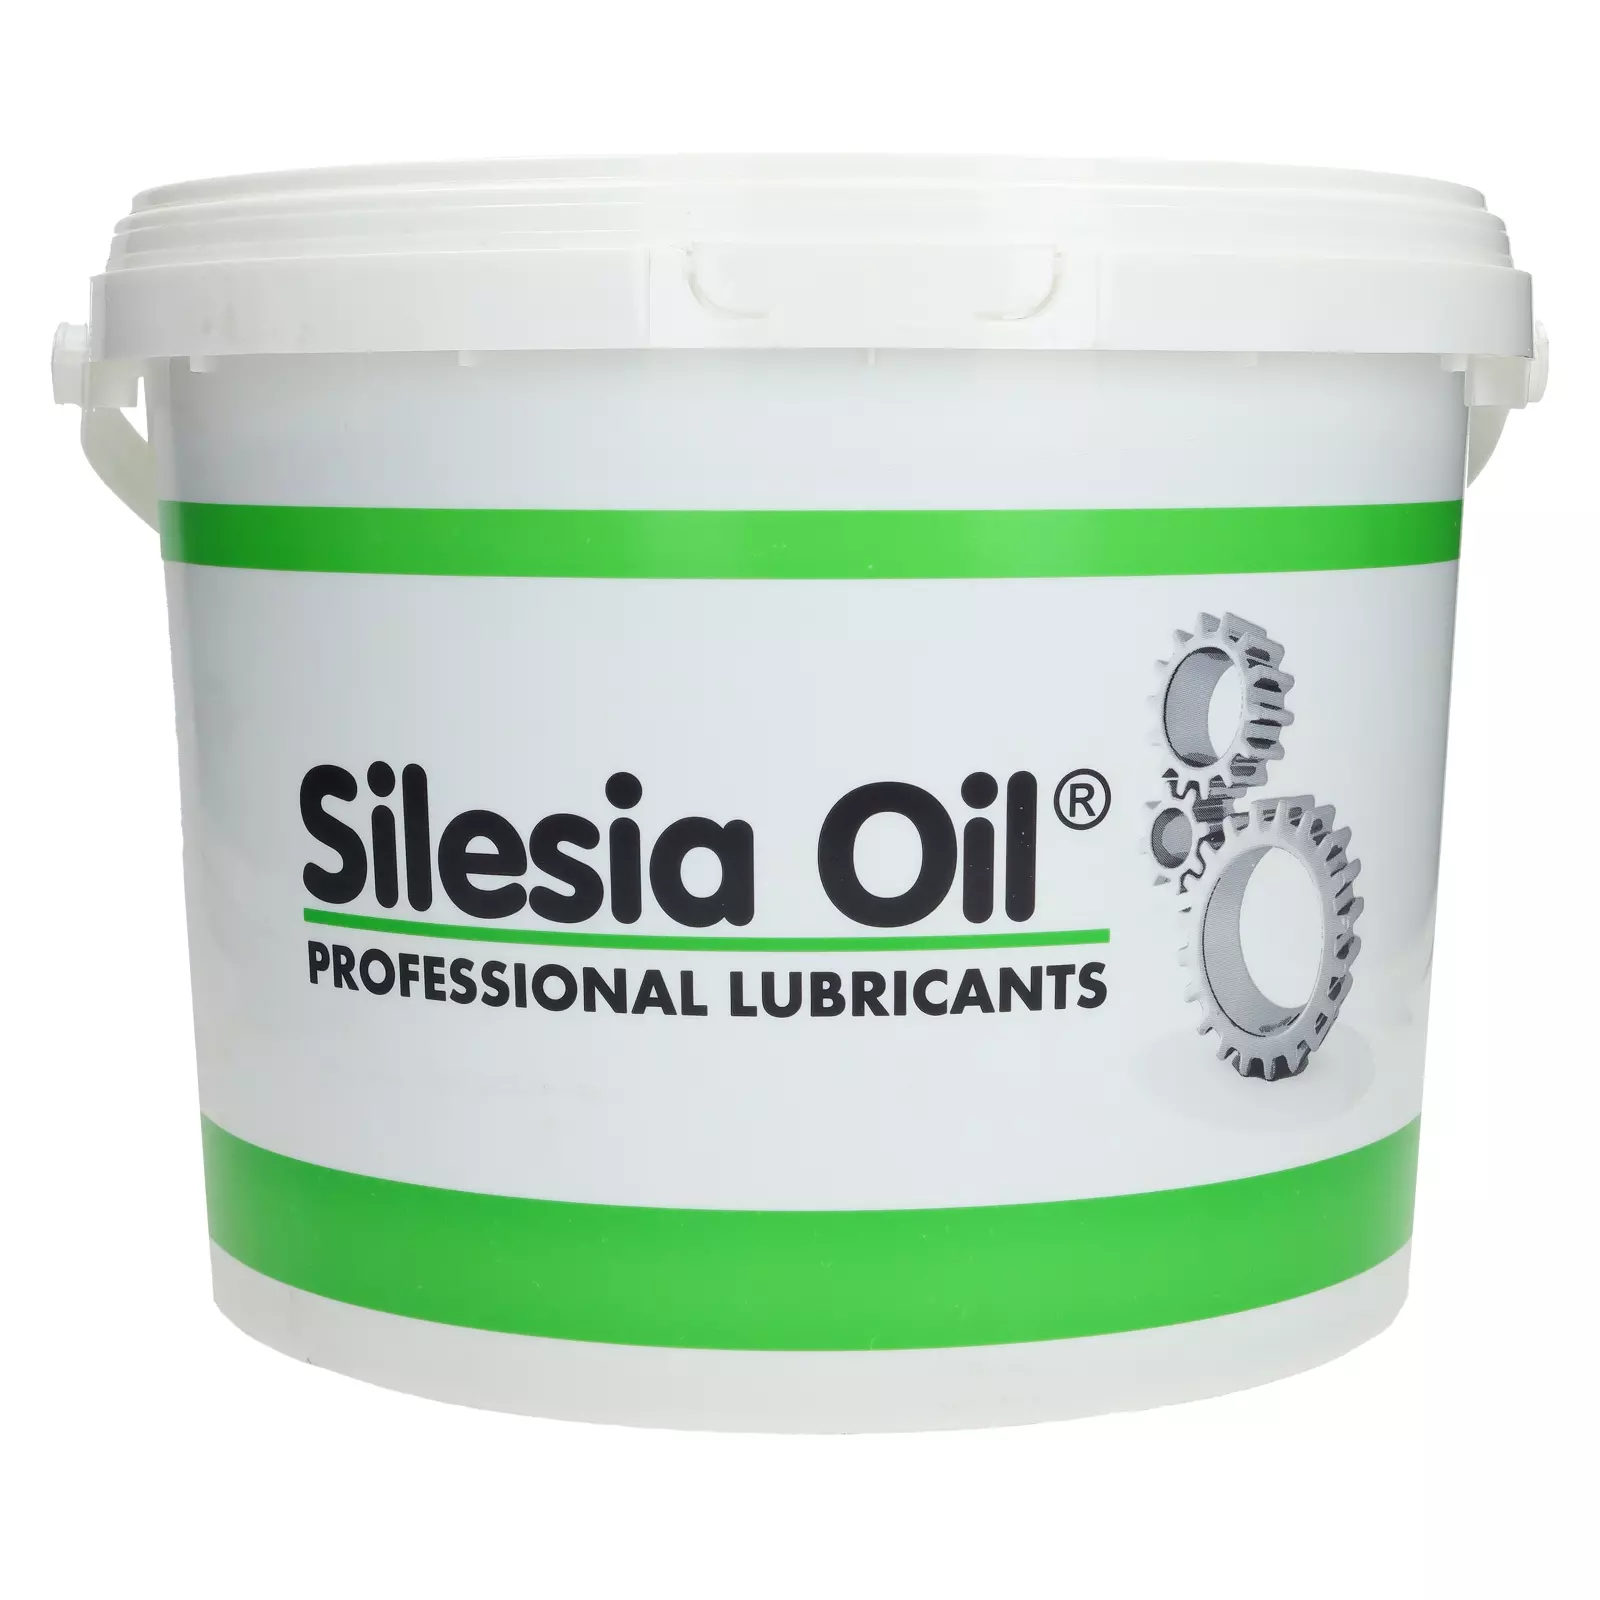 Жидкая смазка Silesia Oil EPX 000 - 4,5 кг, SIEPX000-4,5